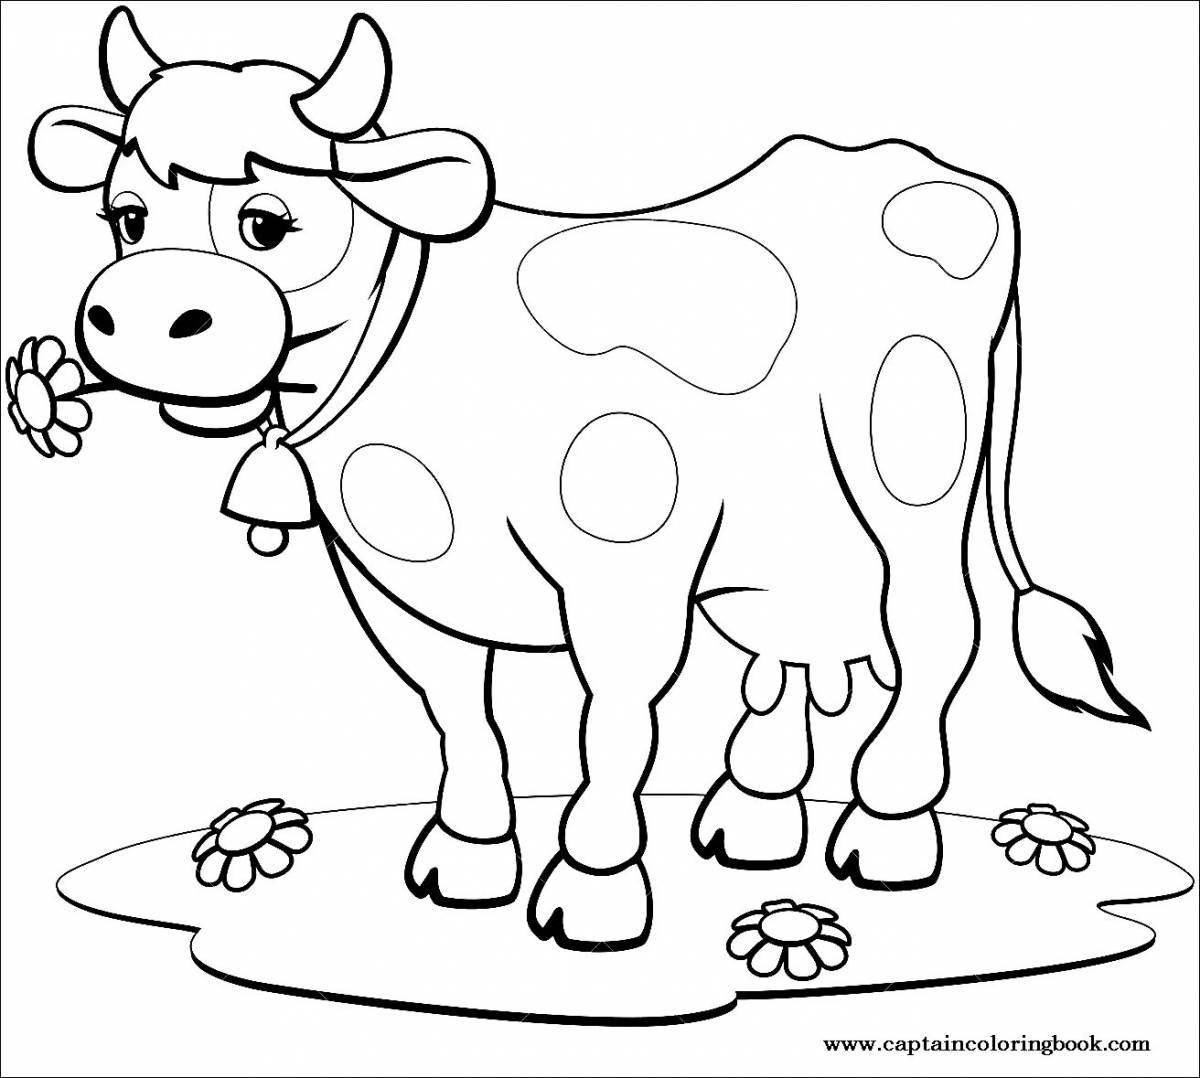 Раскраска яркая корова и теленок